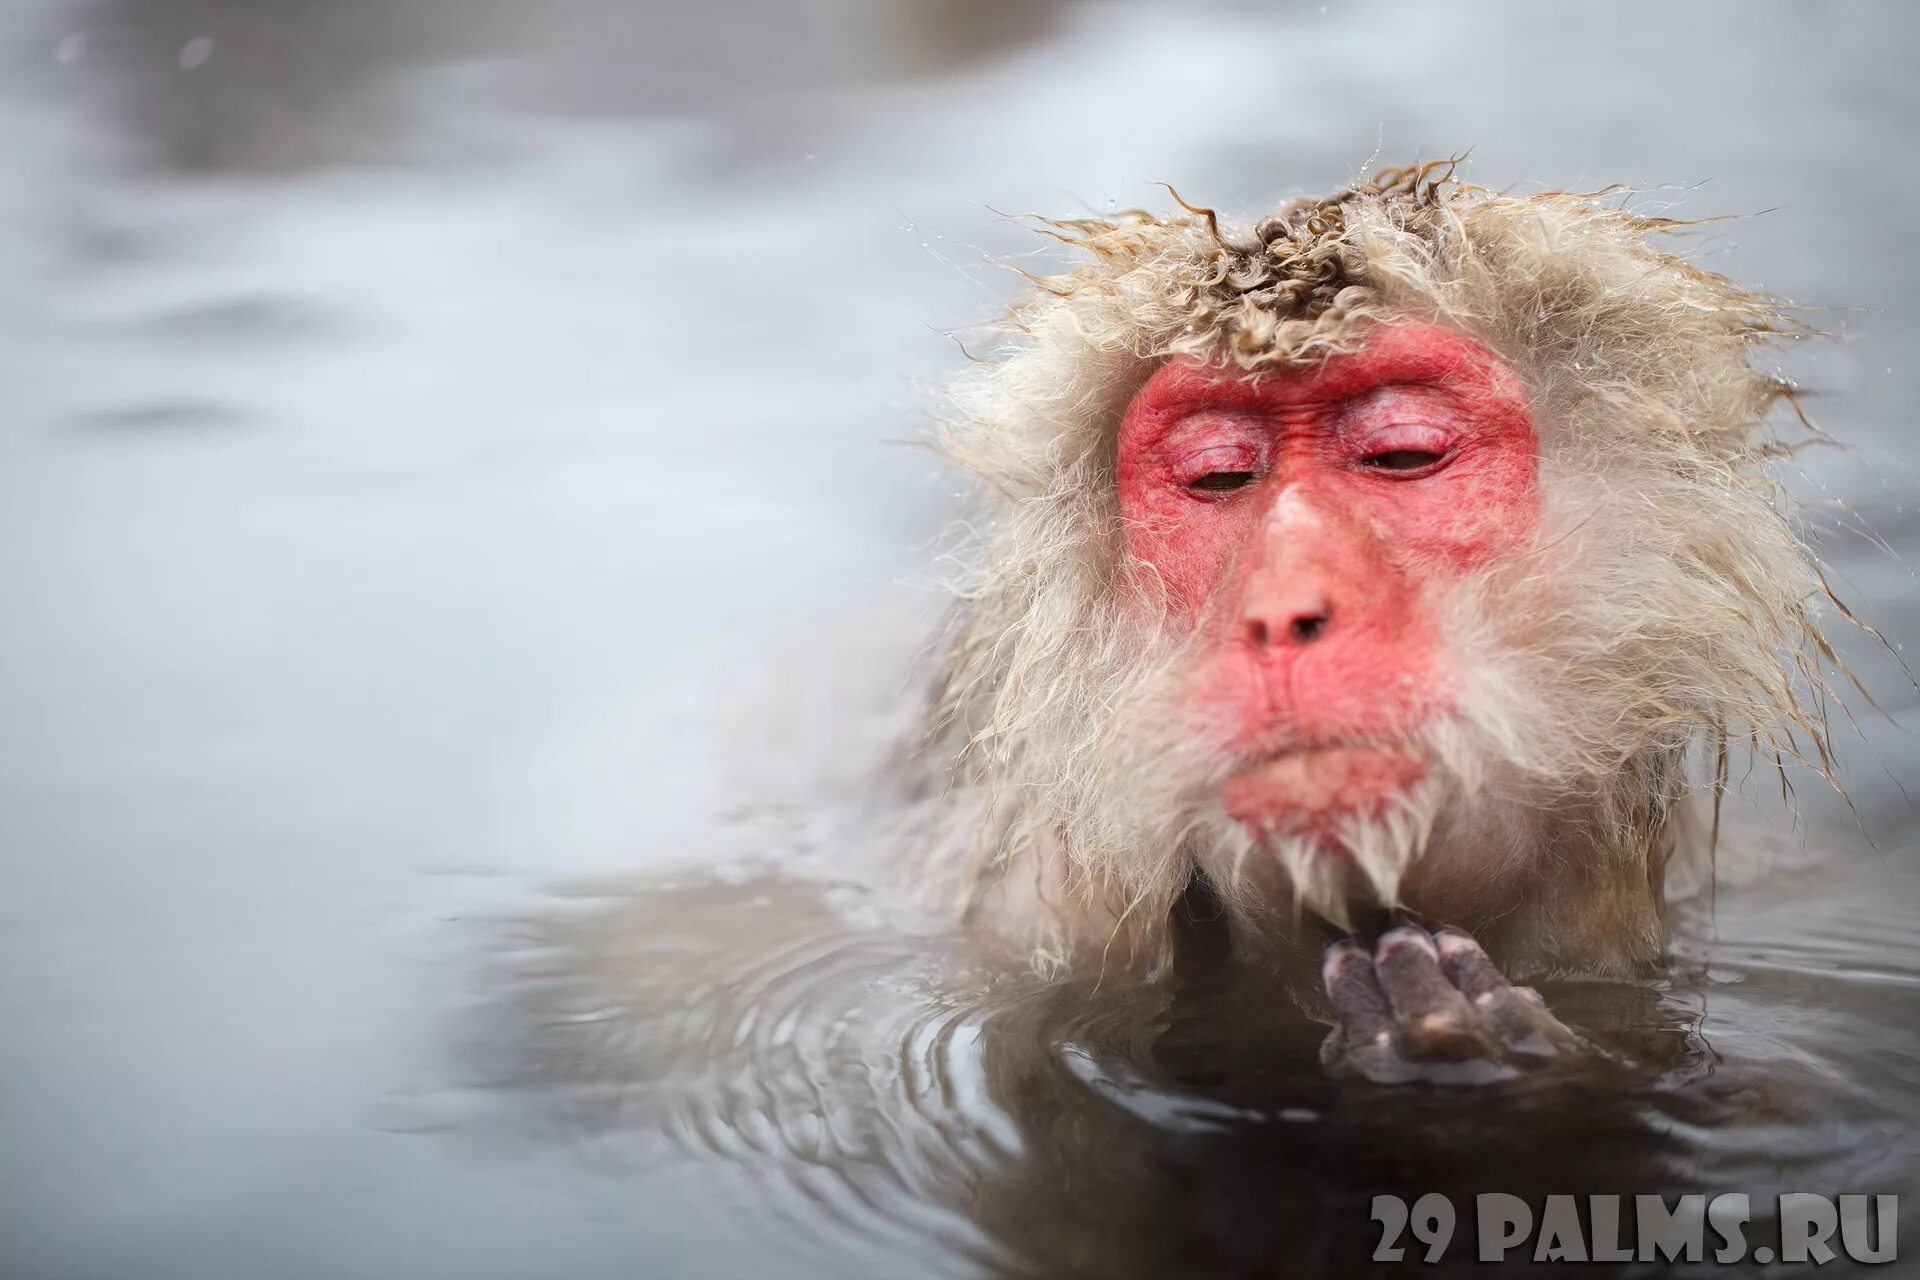 Обезьянки в термальных источниках. Японские обезьяны в теплых источниках. Японские макаки в горячих источниках. Макаки в горячем источнике. Обезьяна купается в теплой воде